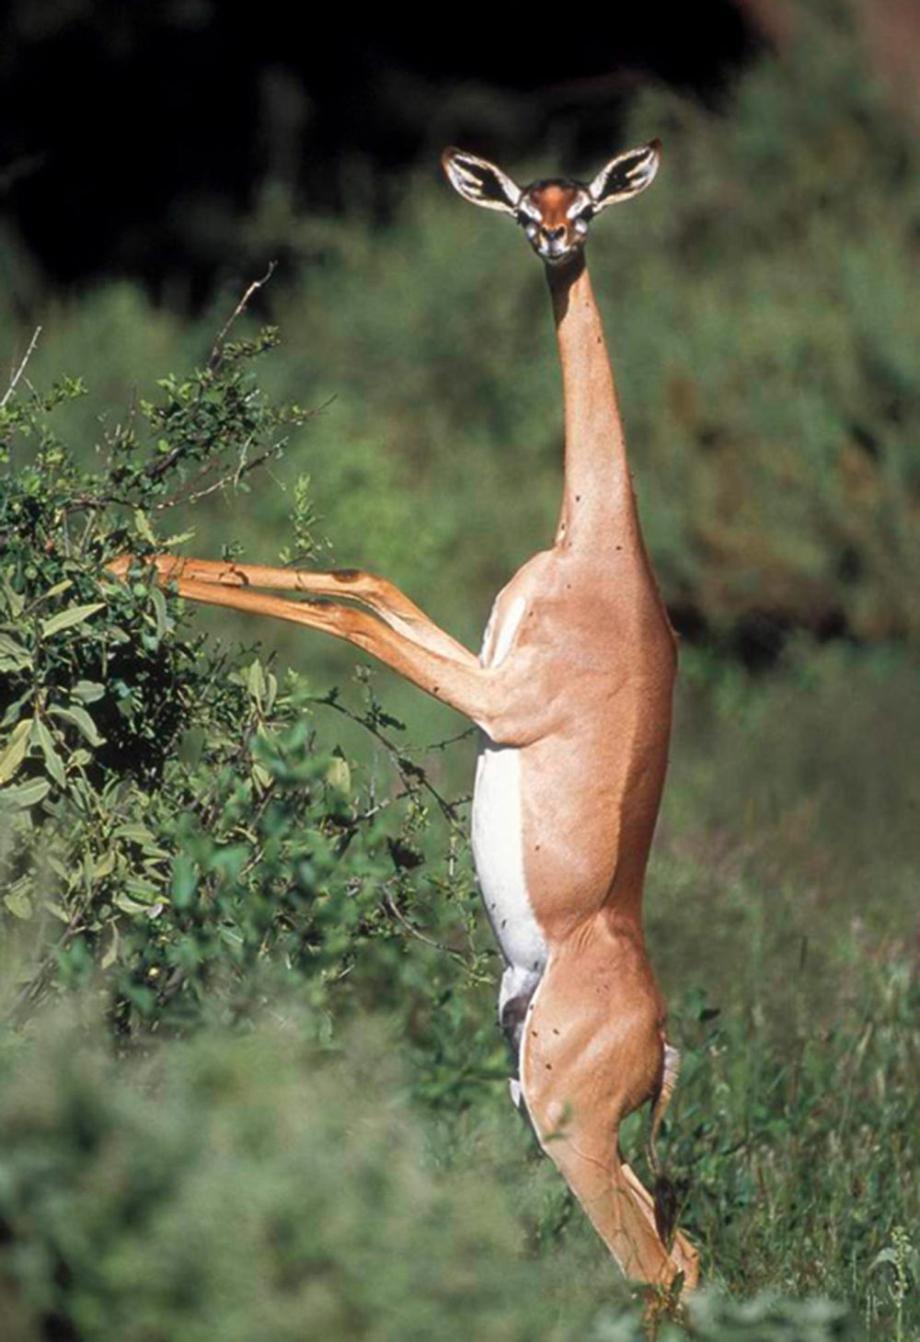 The Gerenuk